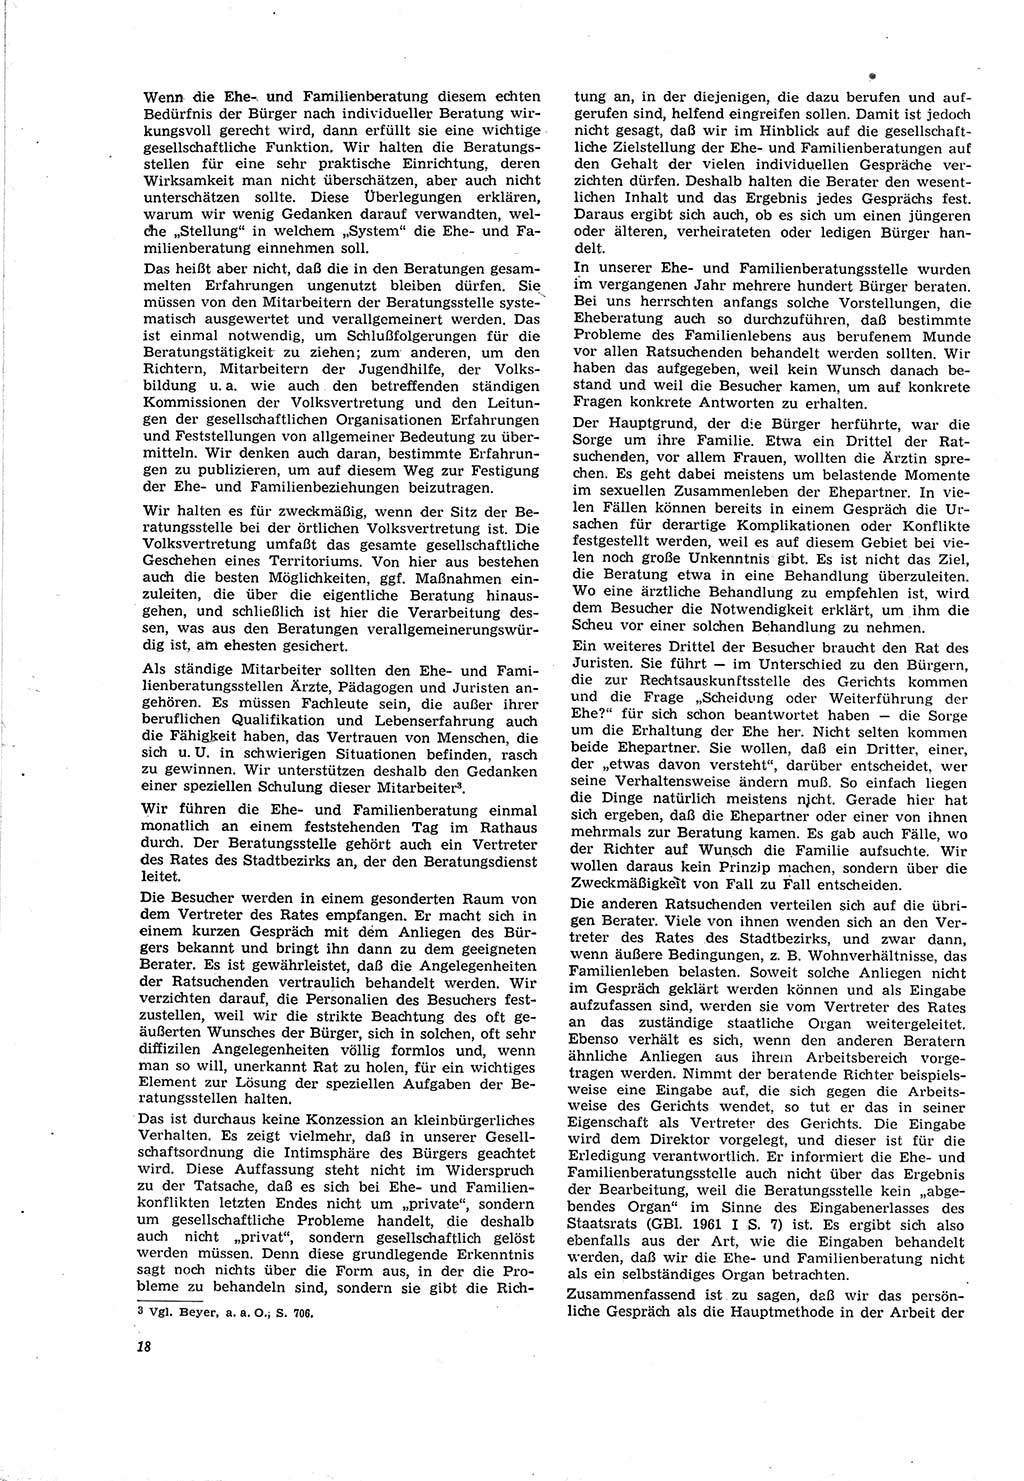 Neue Justiz (NJ), Zeitschrift für Recht und Rechtswissenschaft [Deutsche Demokratische Republik (DDR)], 20. Jahrgang 1966, Seite 18 (NJ DDR 1966, S. 18)